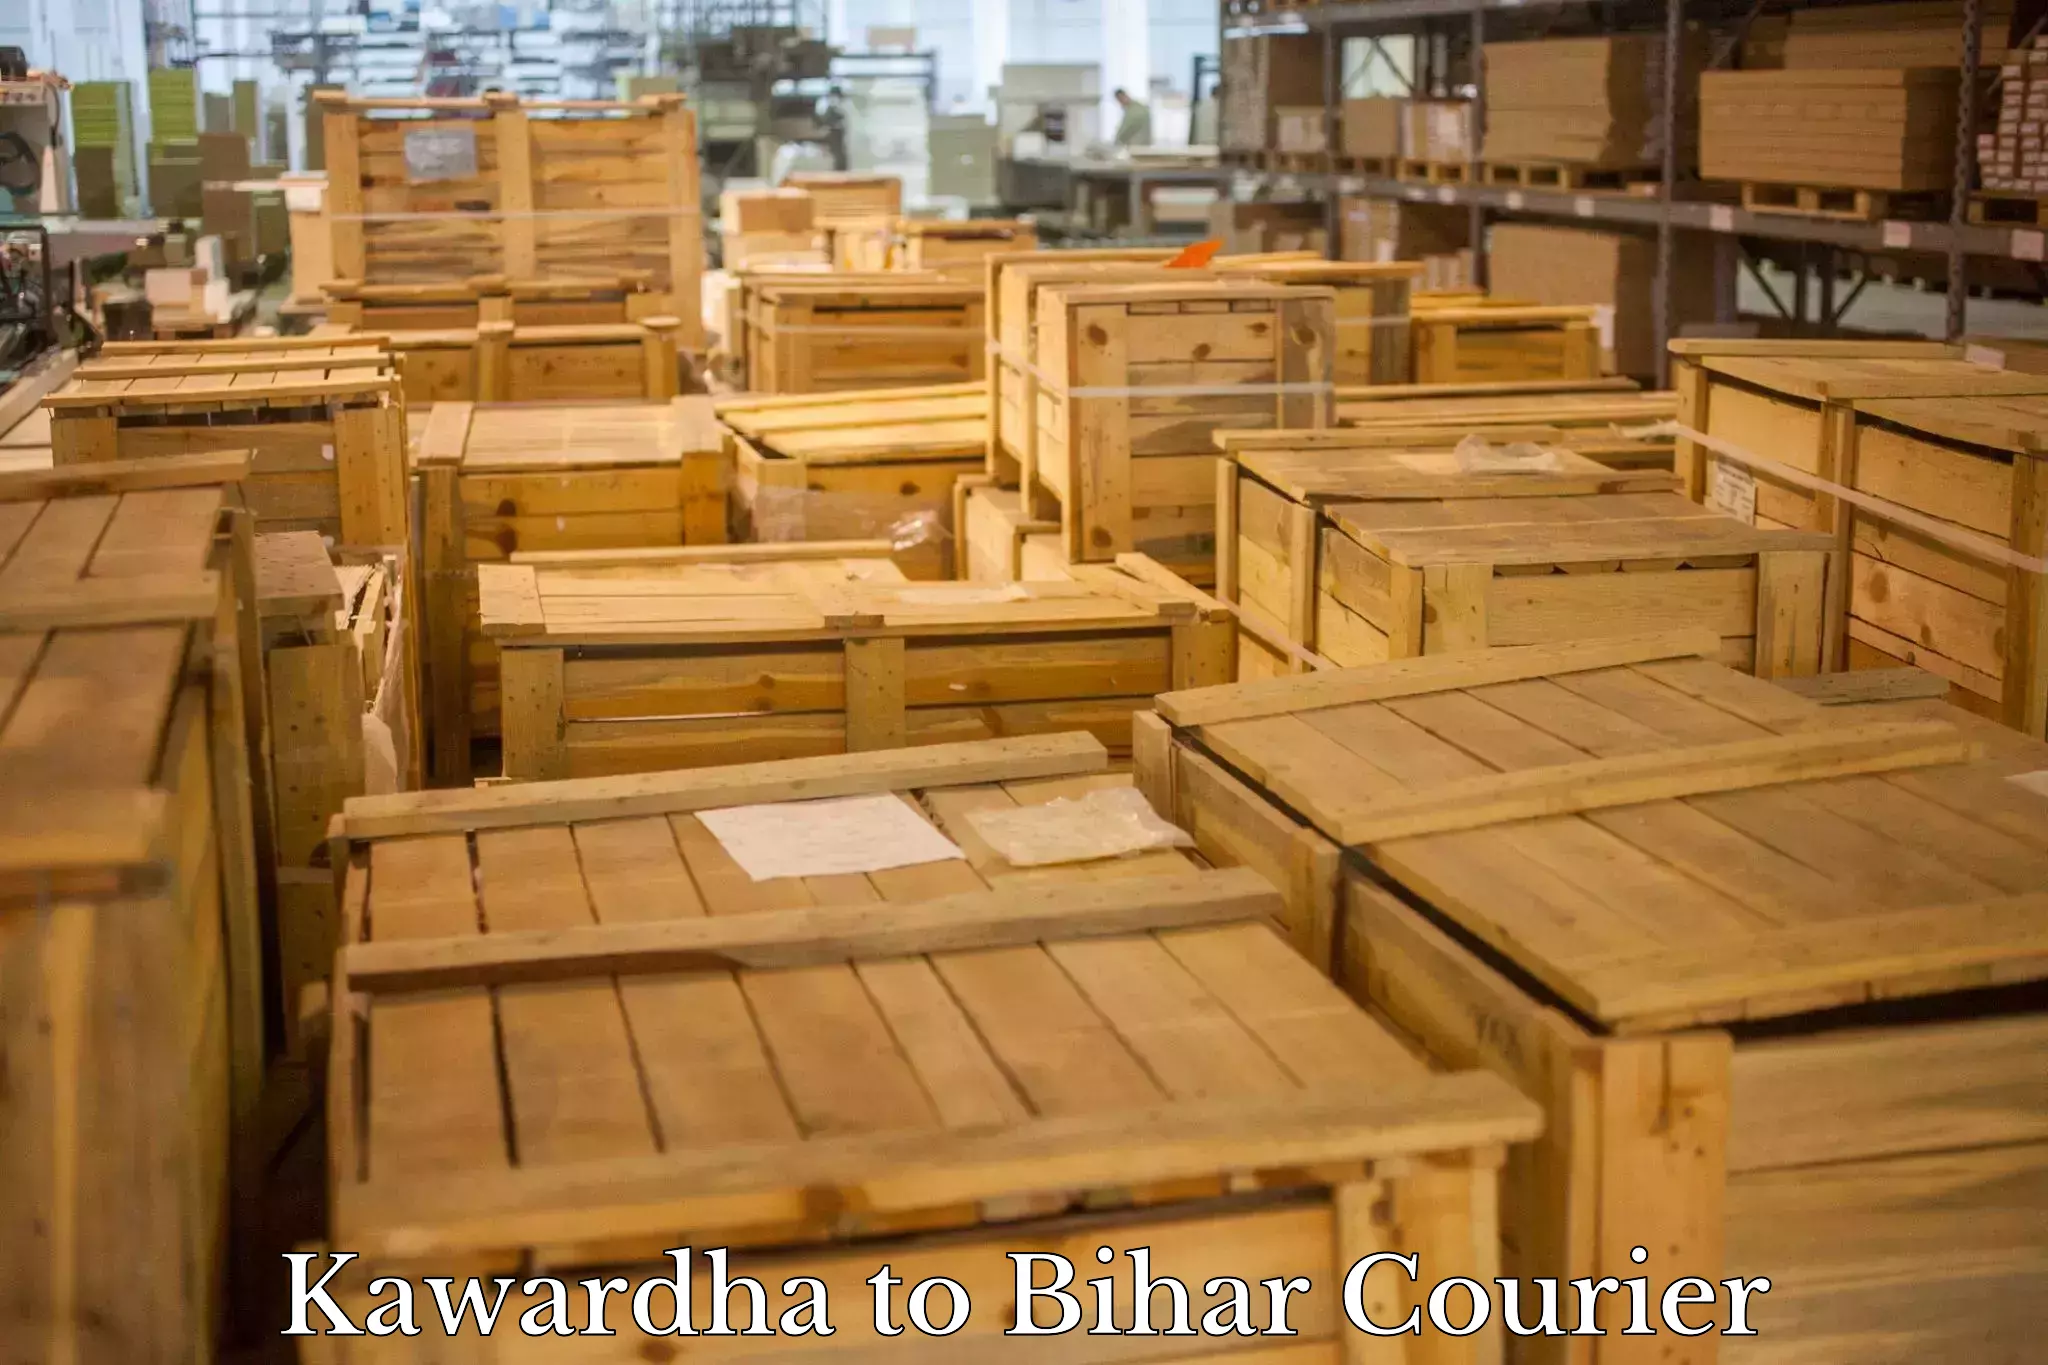 Expedited shipping methods Kawardha to Nalanda